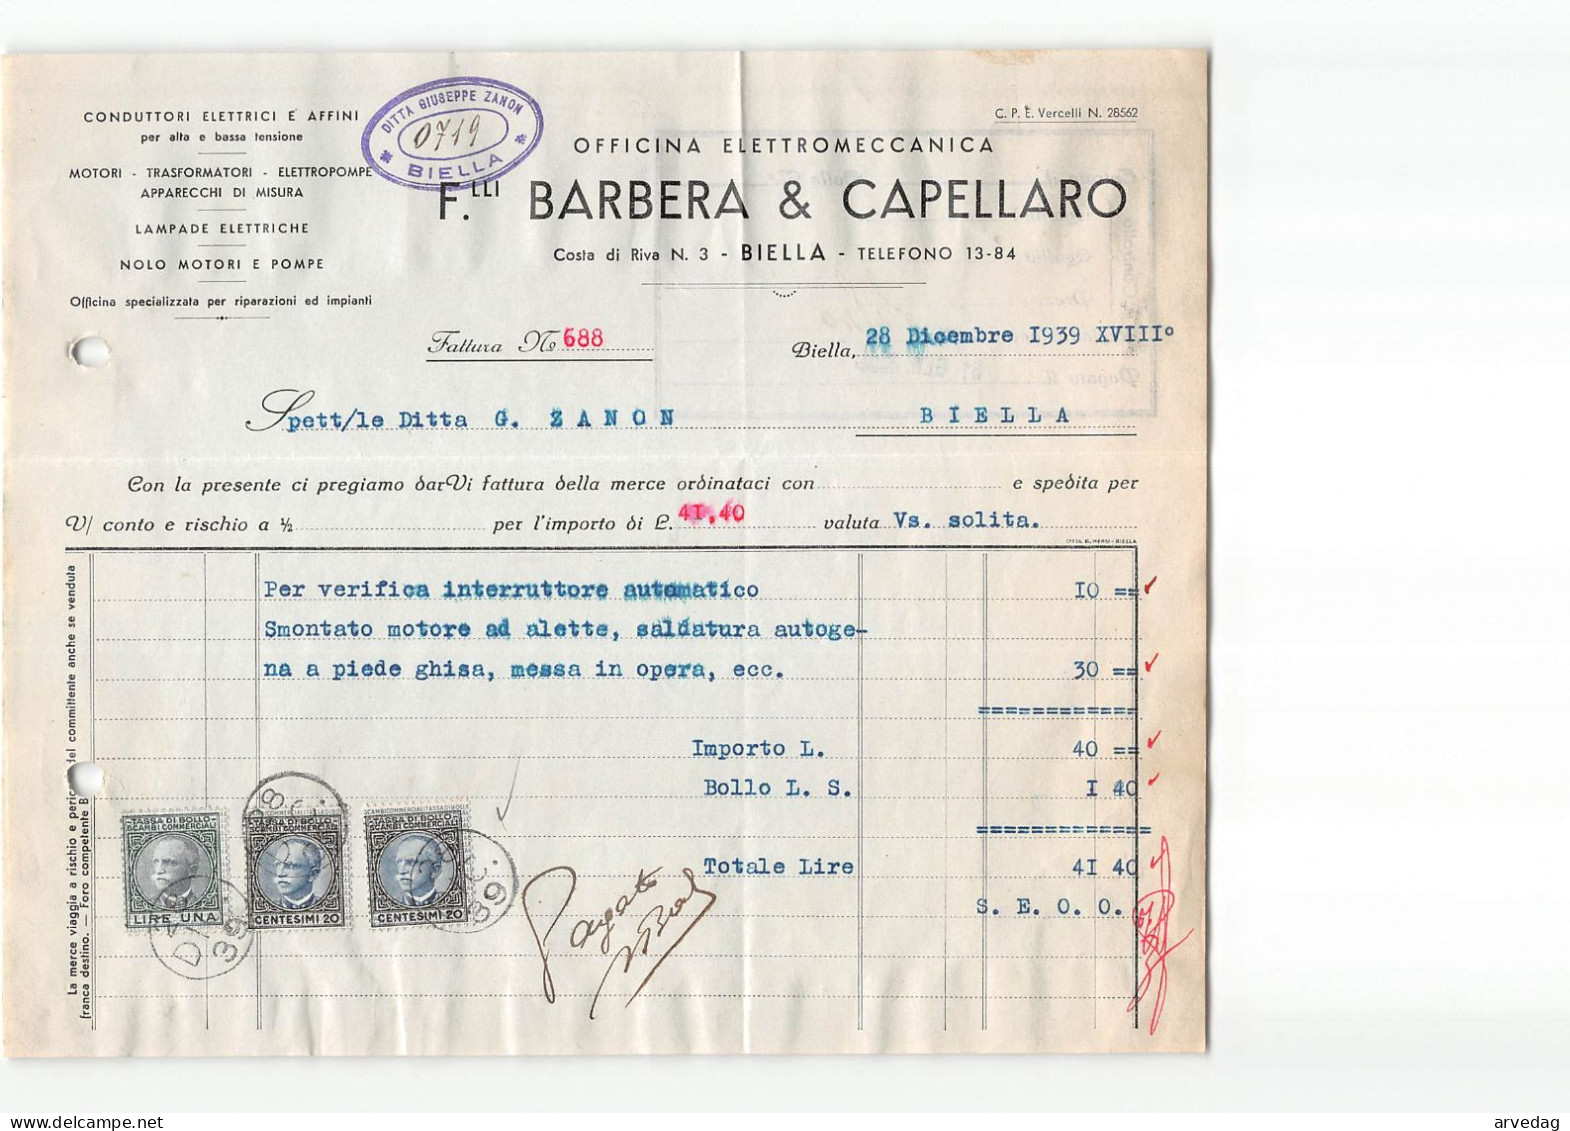 AG2607 BARBERA & CAPELLARO OFFICINA ELETTROMECCANICA - FATTURA - Italy